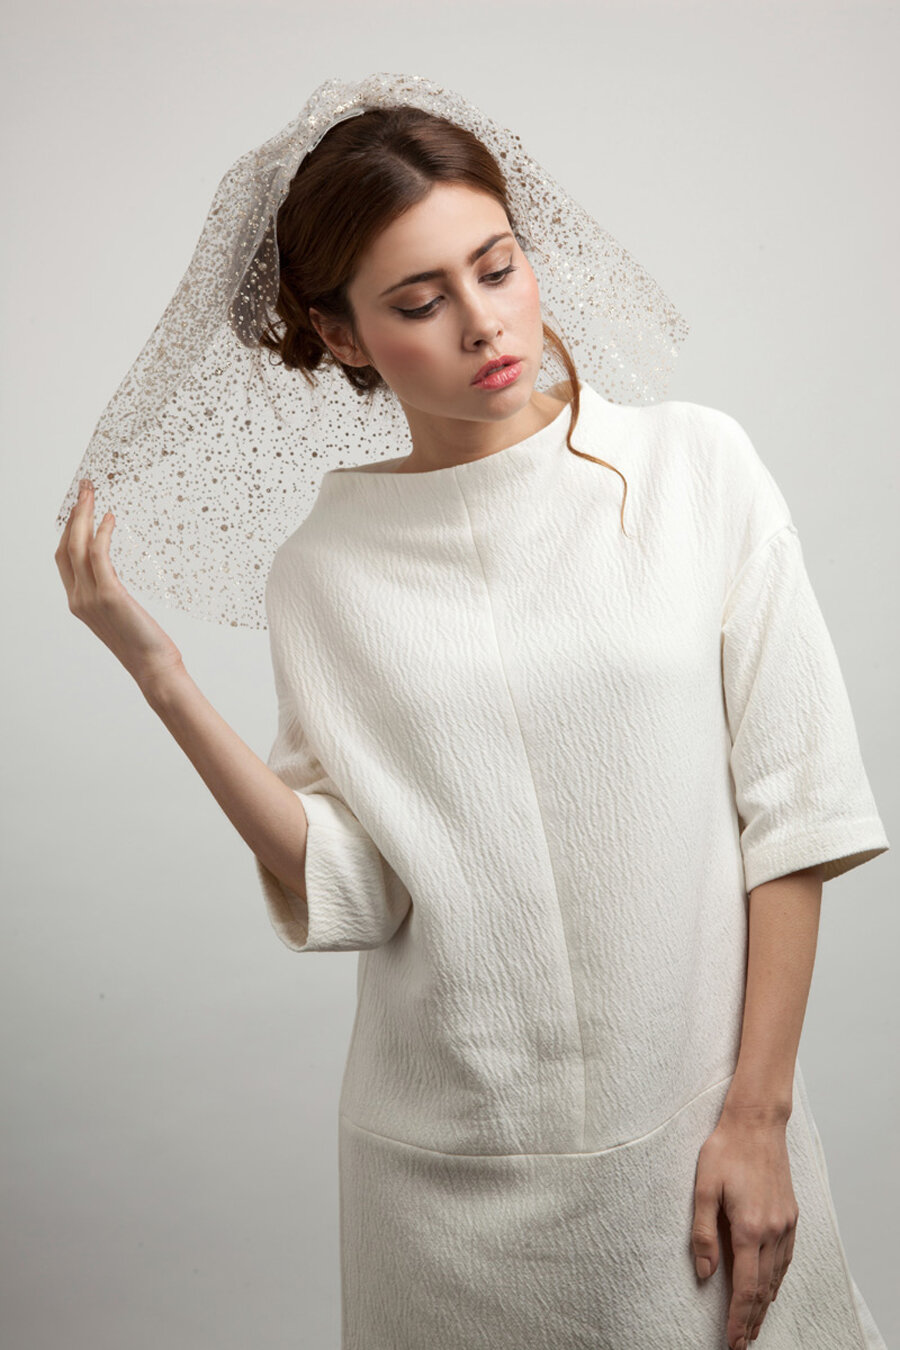 Bridal veil by Am Faulkner designer and milliner